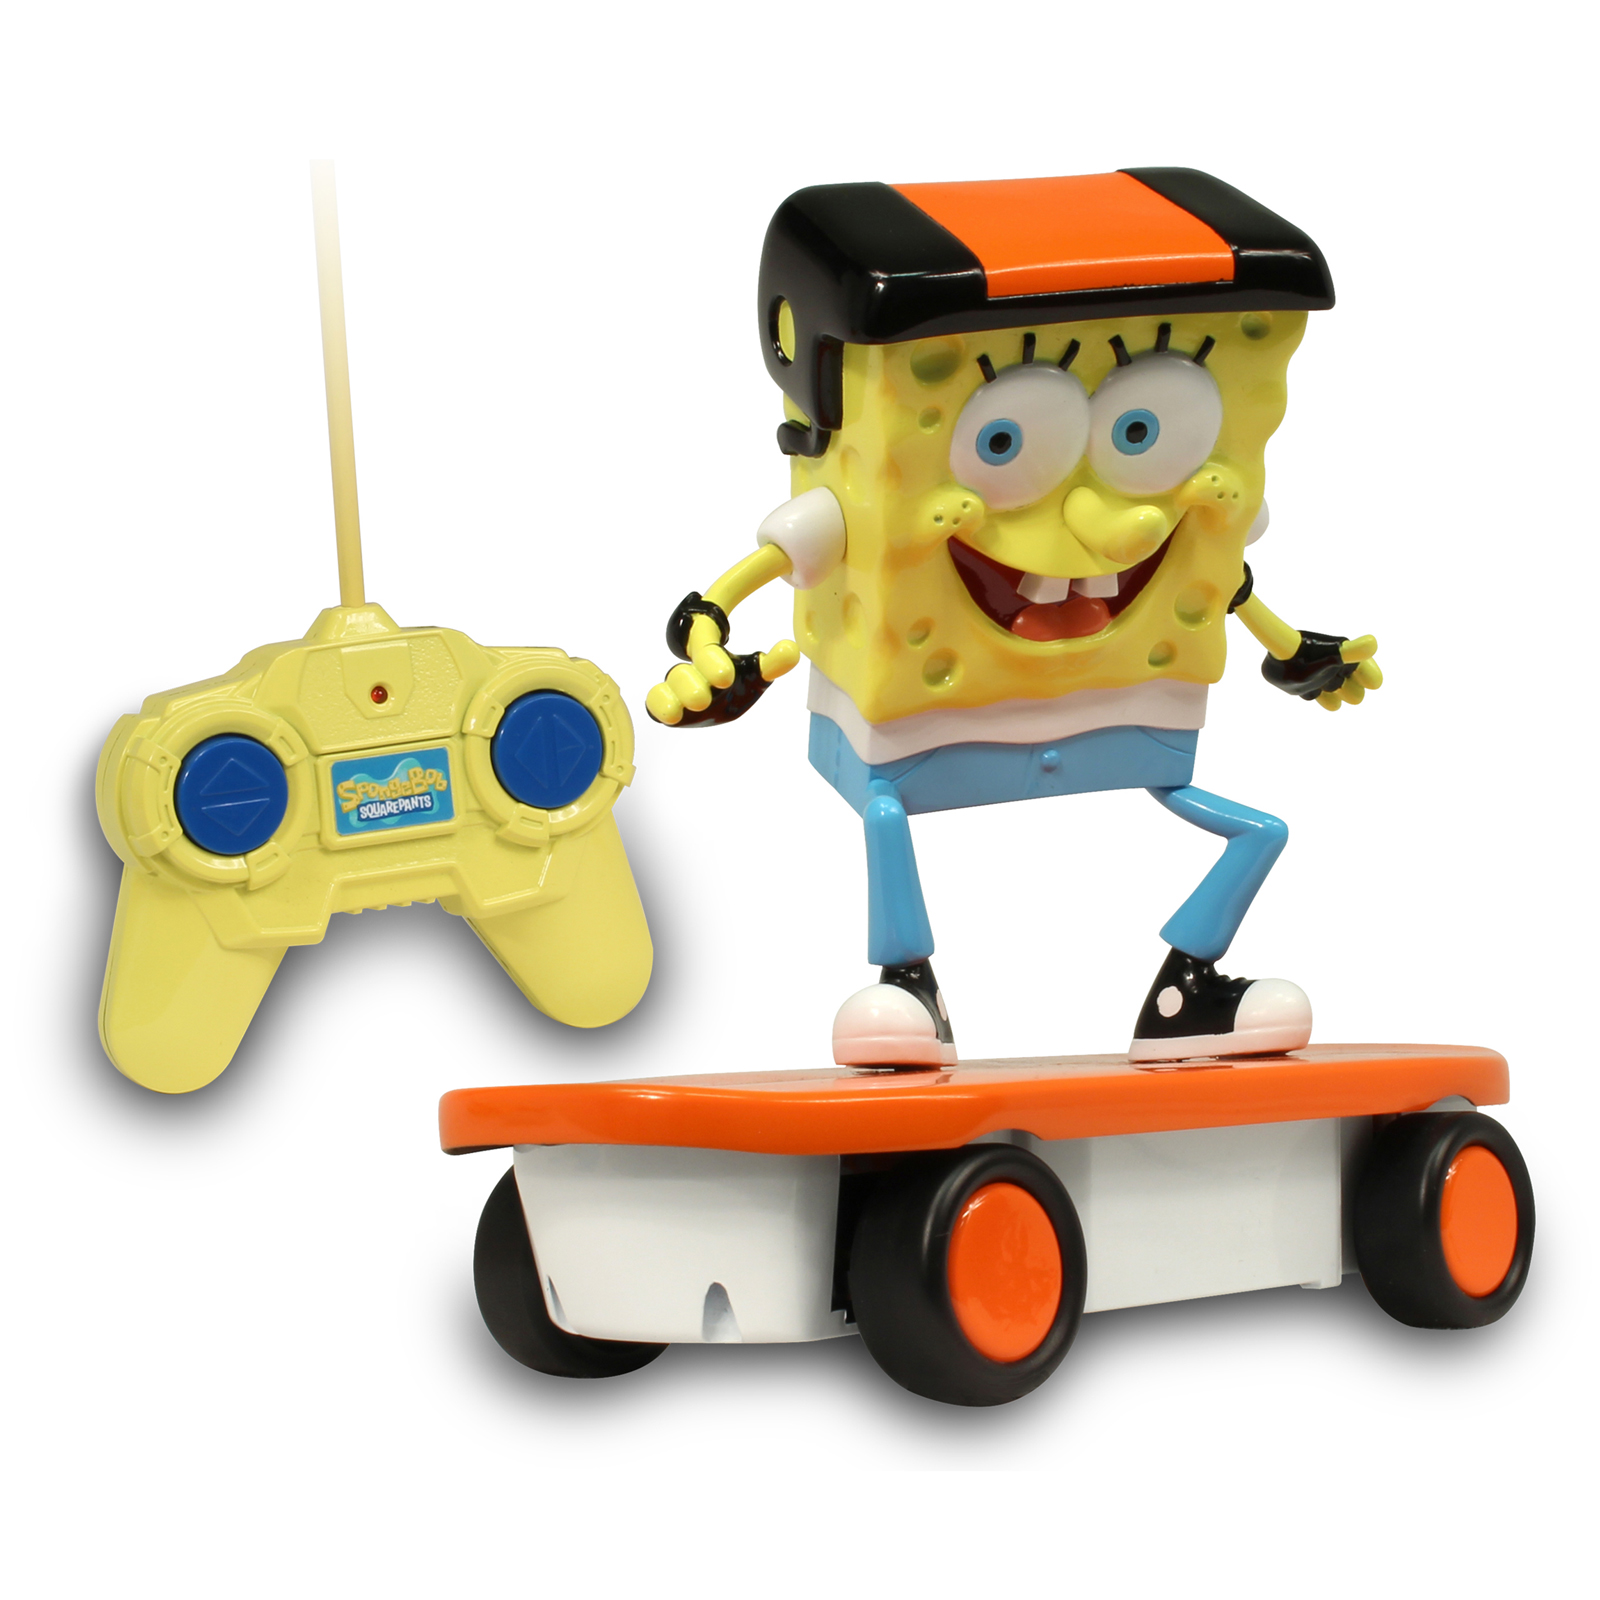 Nkok Remote Control SpongeBob Skateboarder